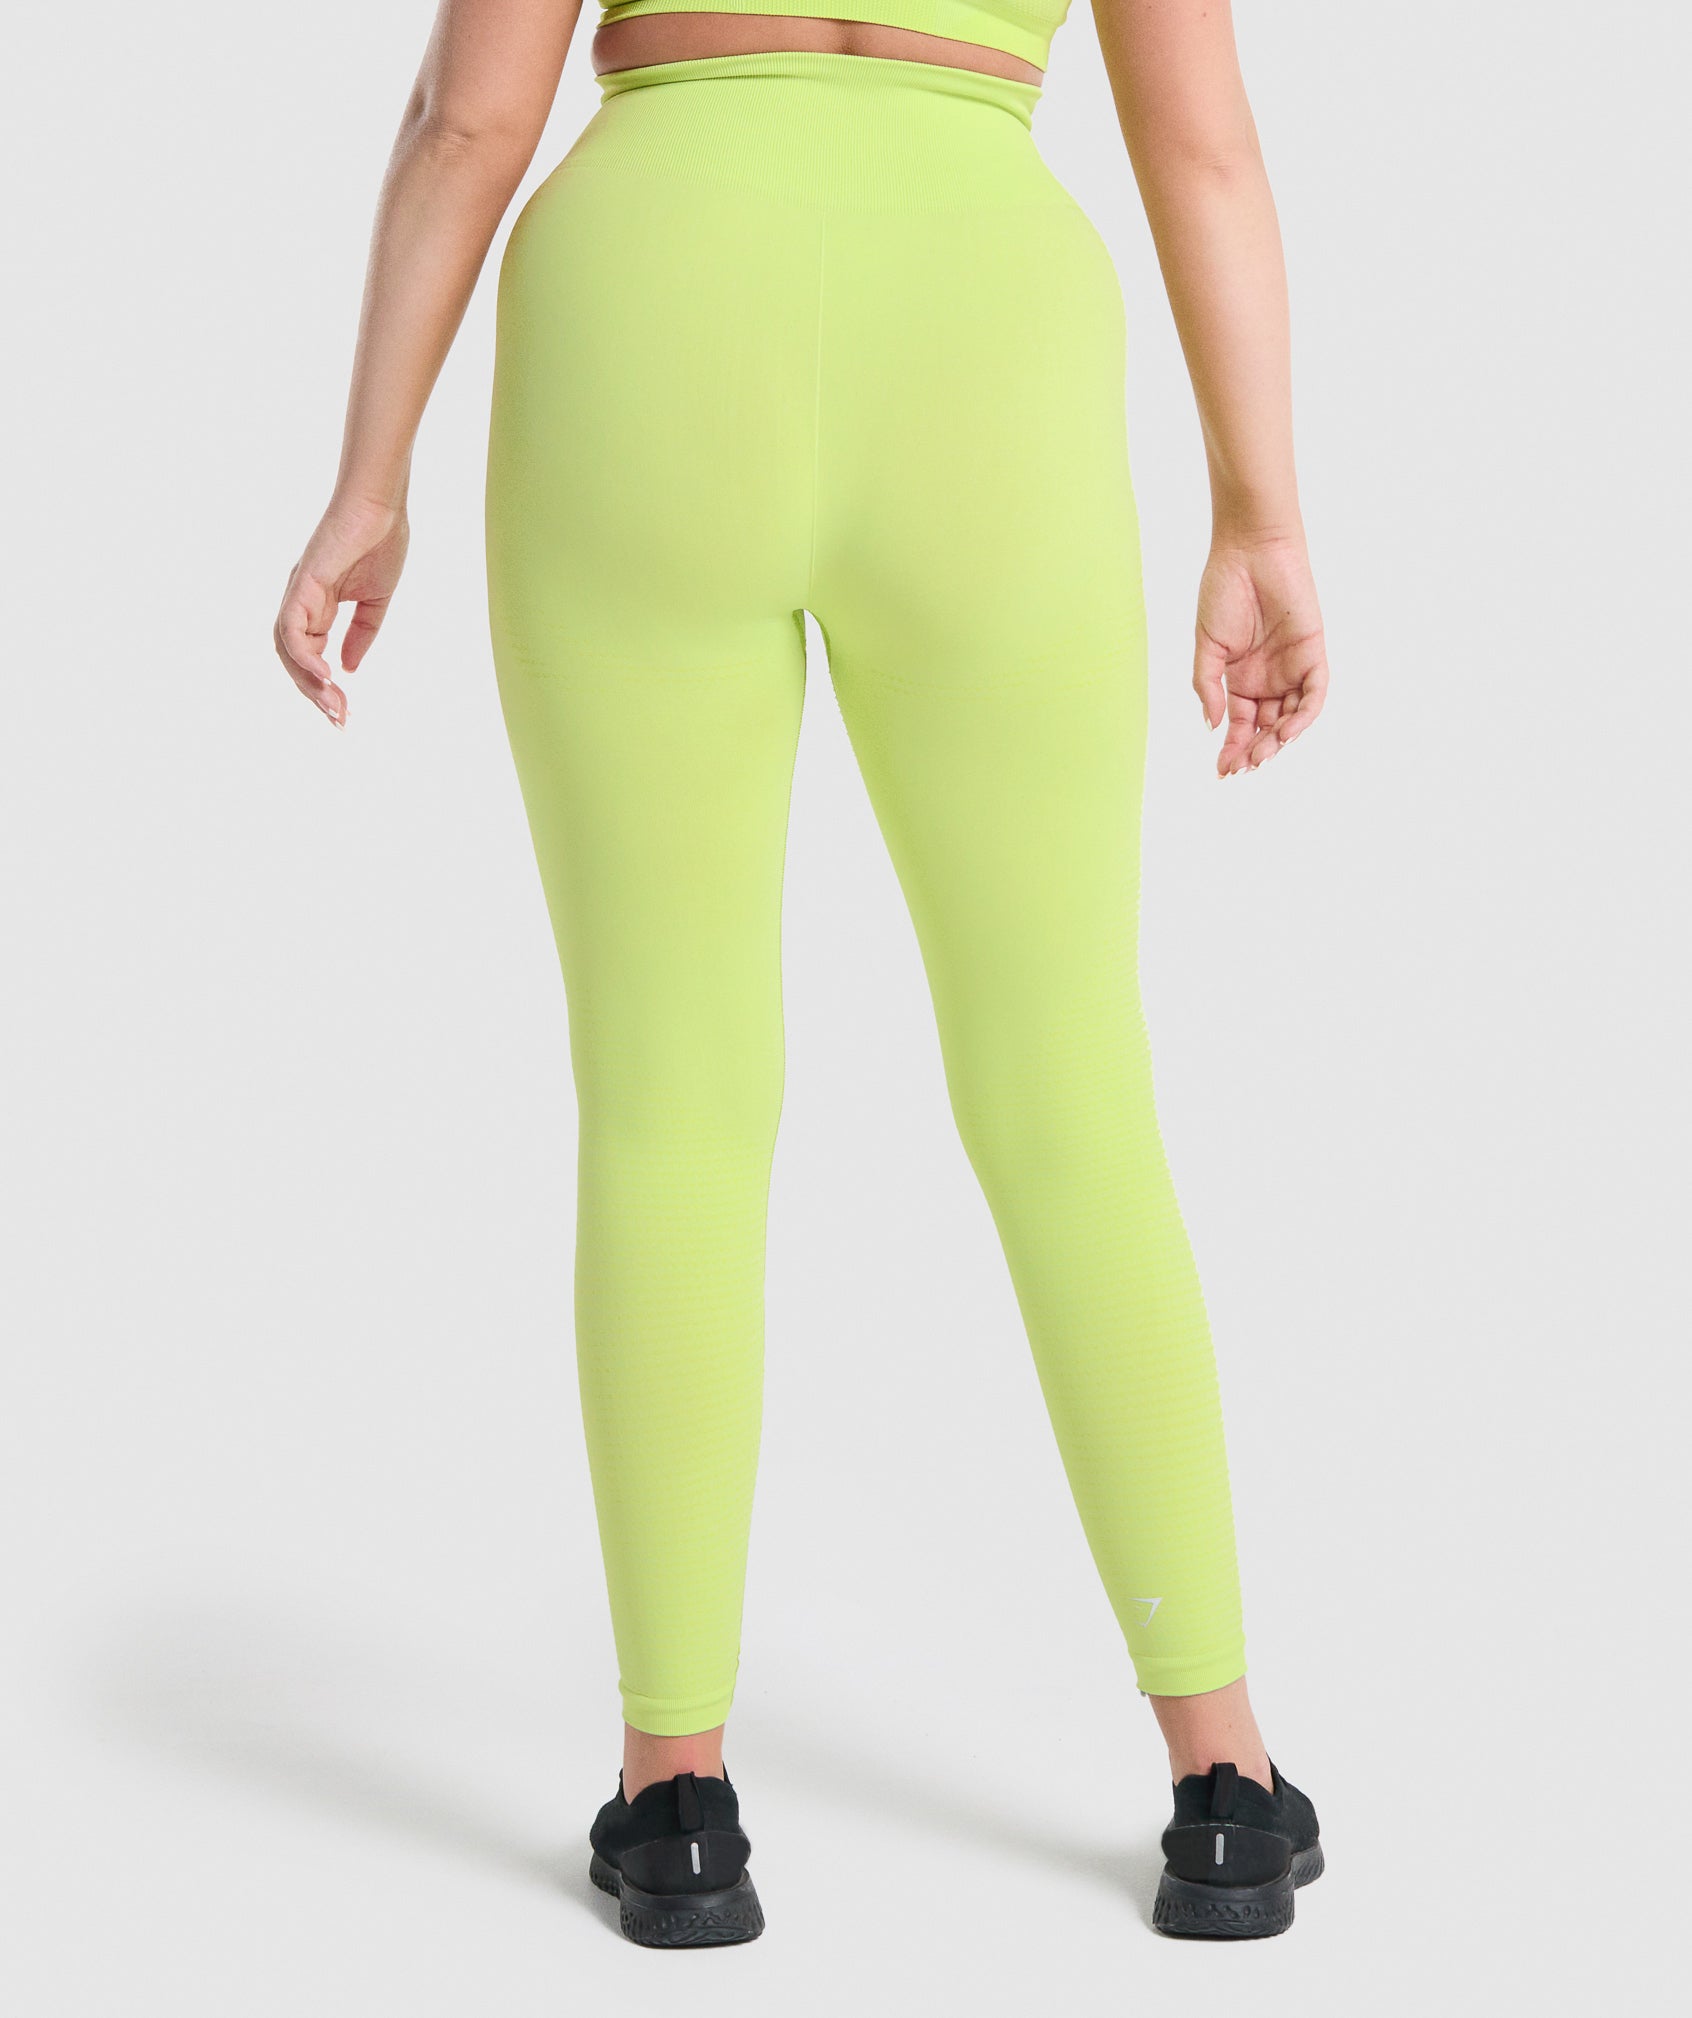 ⇨𝒊𝒕𝒆𝒎: Gymshark yellow flex high waisted leggings 💛  ⇨𝒄𝒐𝒏𝒅𝒊𝒕𝒊𝒐𝒏: like new ⇨𝒔𝒊𝒛�